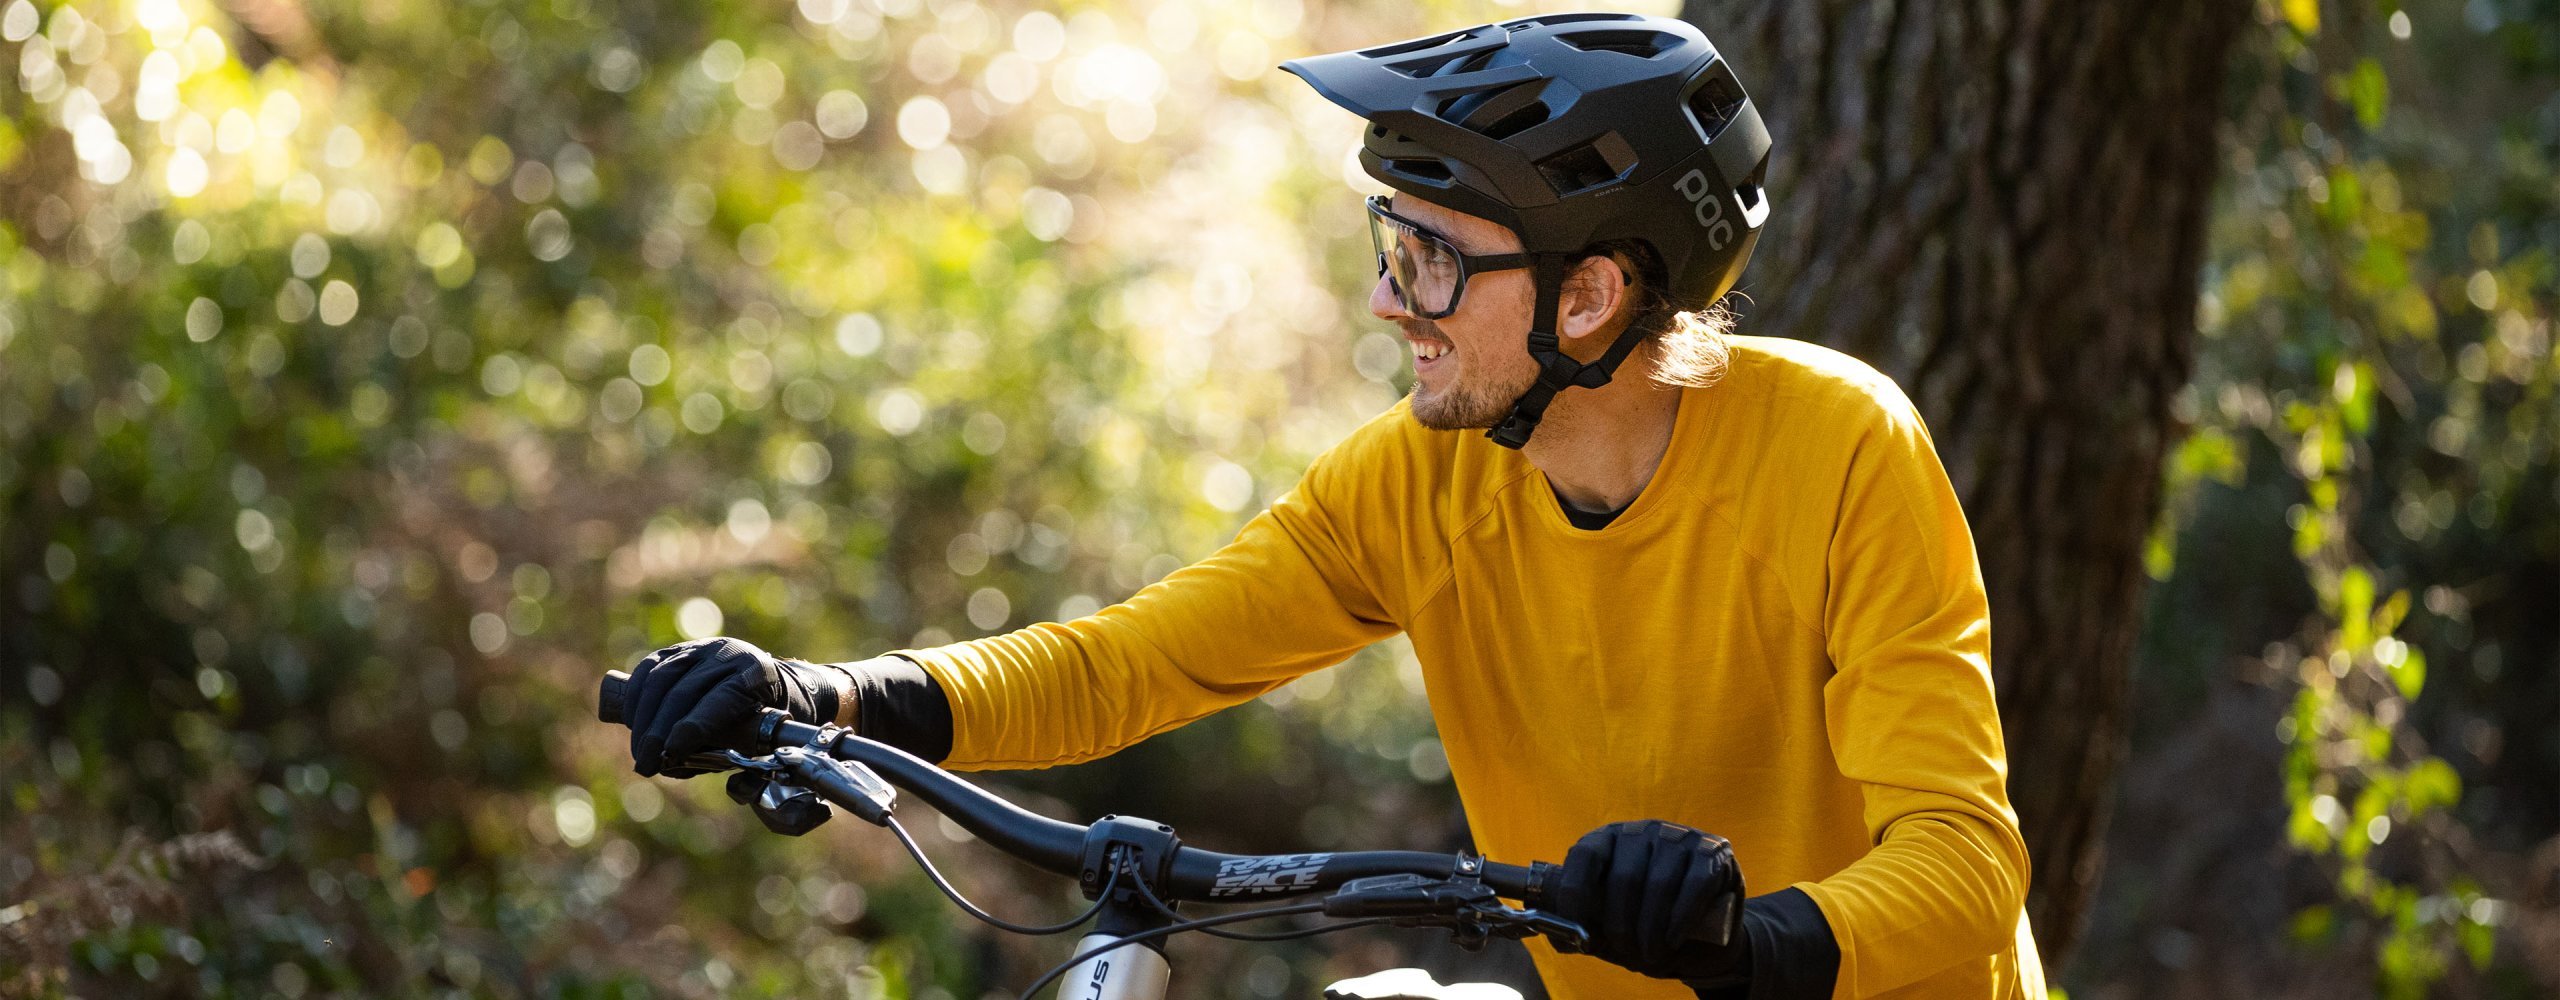 Mountainbiker mit sommerlichen gelben MTB Trikot schiebt sein Bike